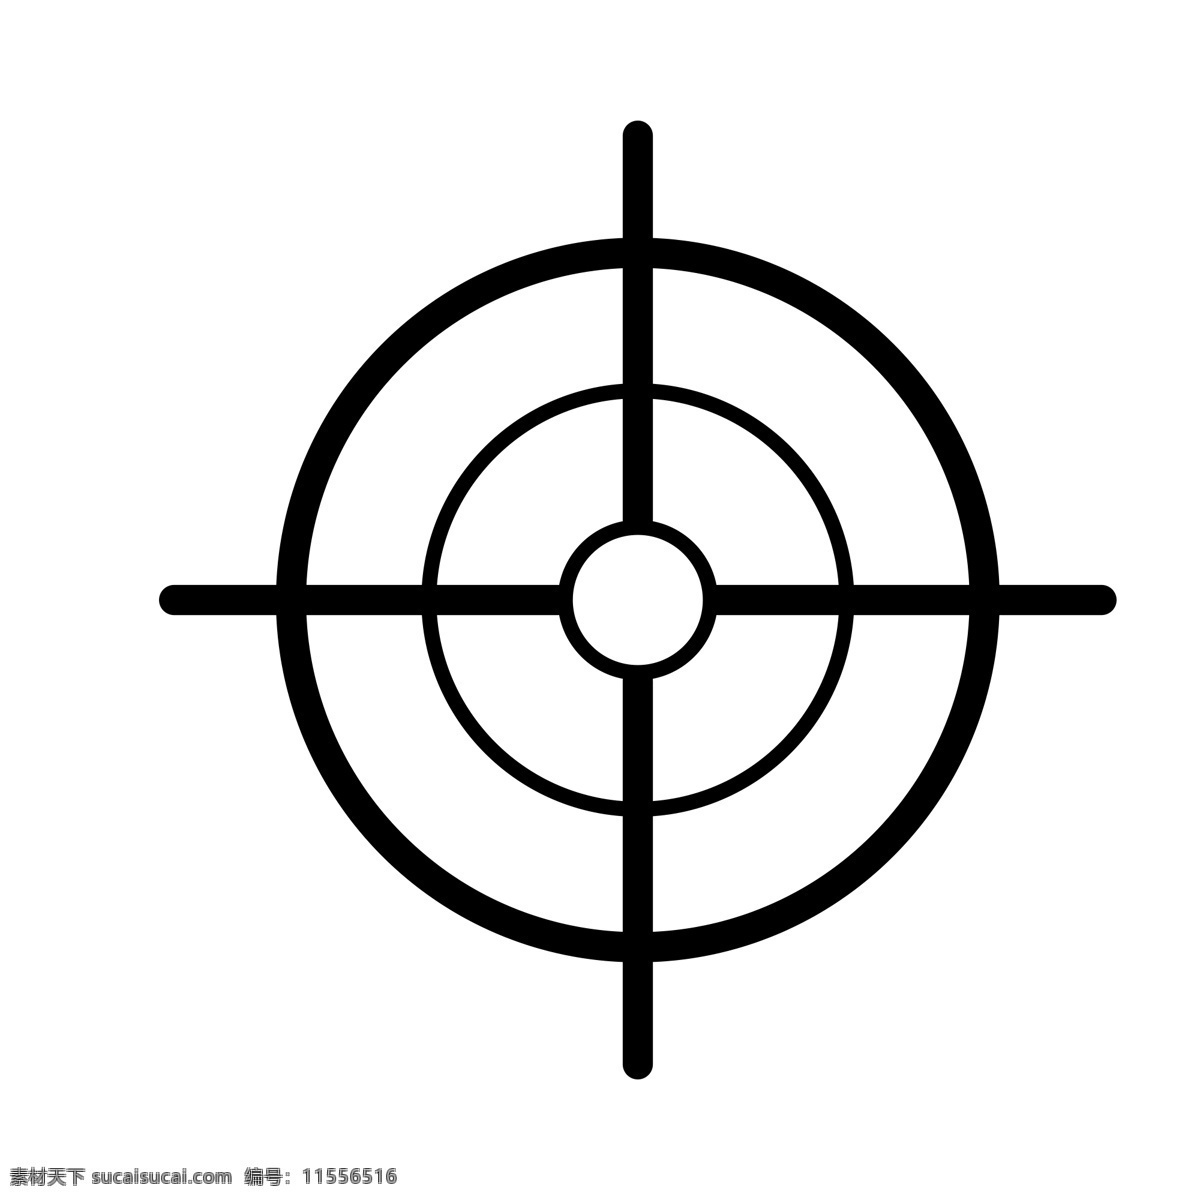 黑色 圆环 瞄准 元素 创意 纹理 扁平化 ui 图标 卡通插画 攻击